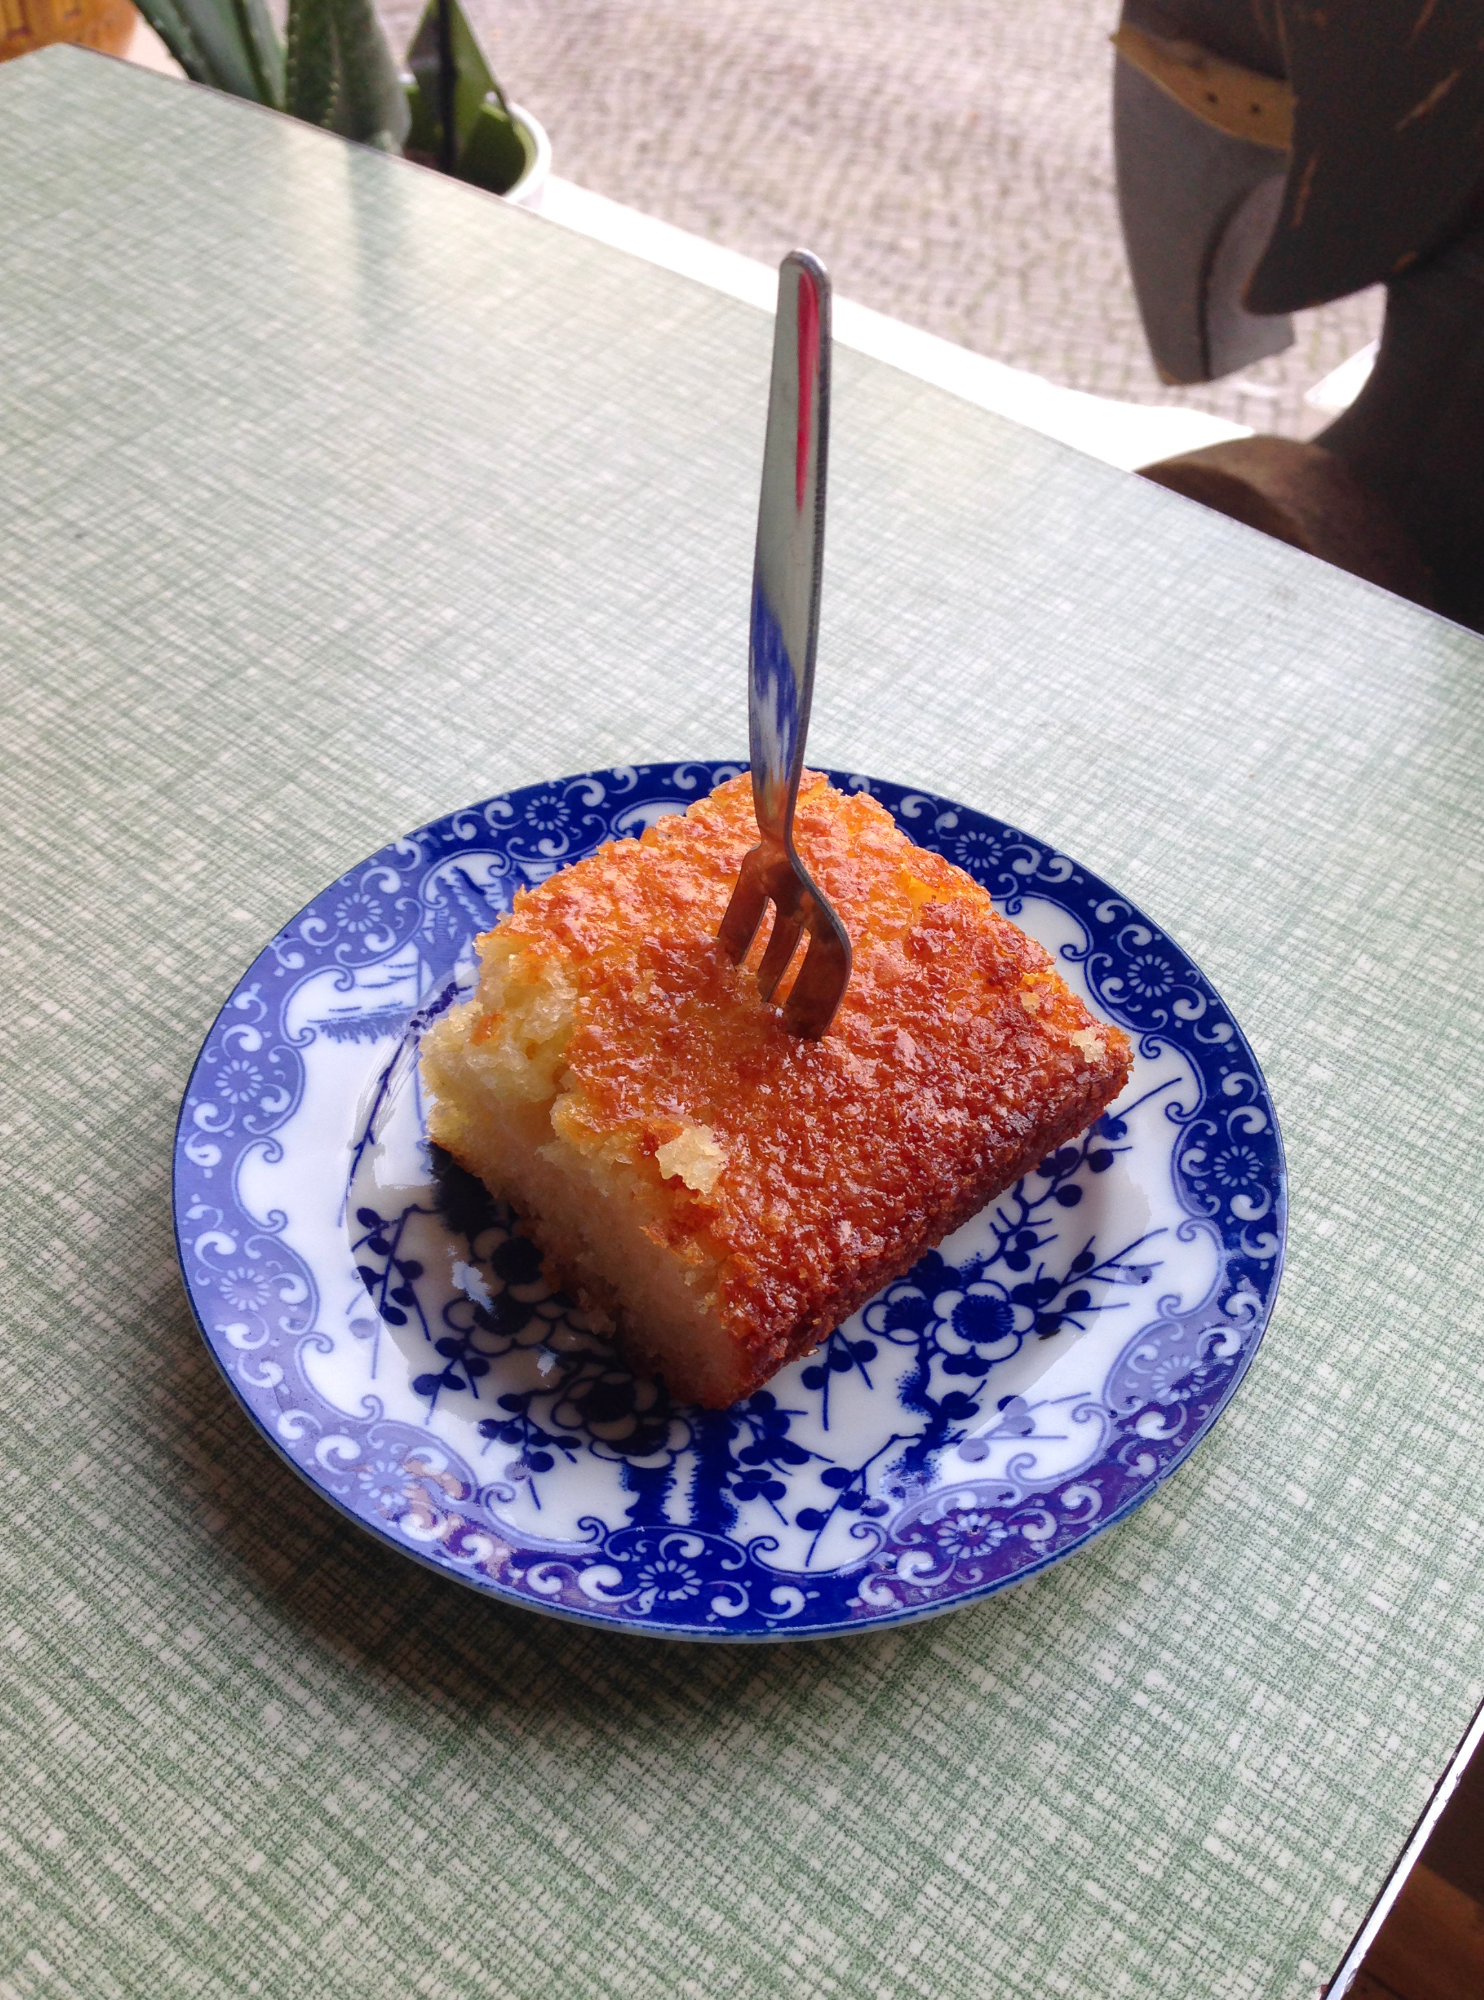 ドイツの驚くべき 食文化 何故ドイツではケーキにフォークを横刺しにするのか問題 に迫る 第二弾 ドイツ大使館 Young Germany Japan